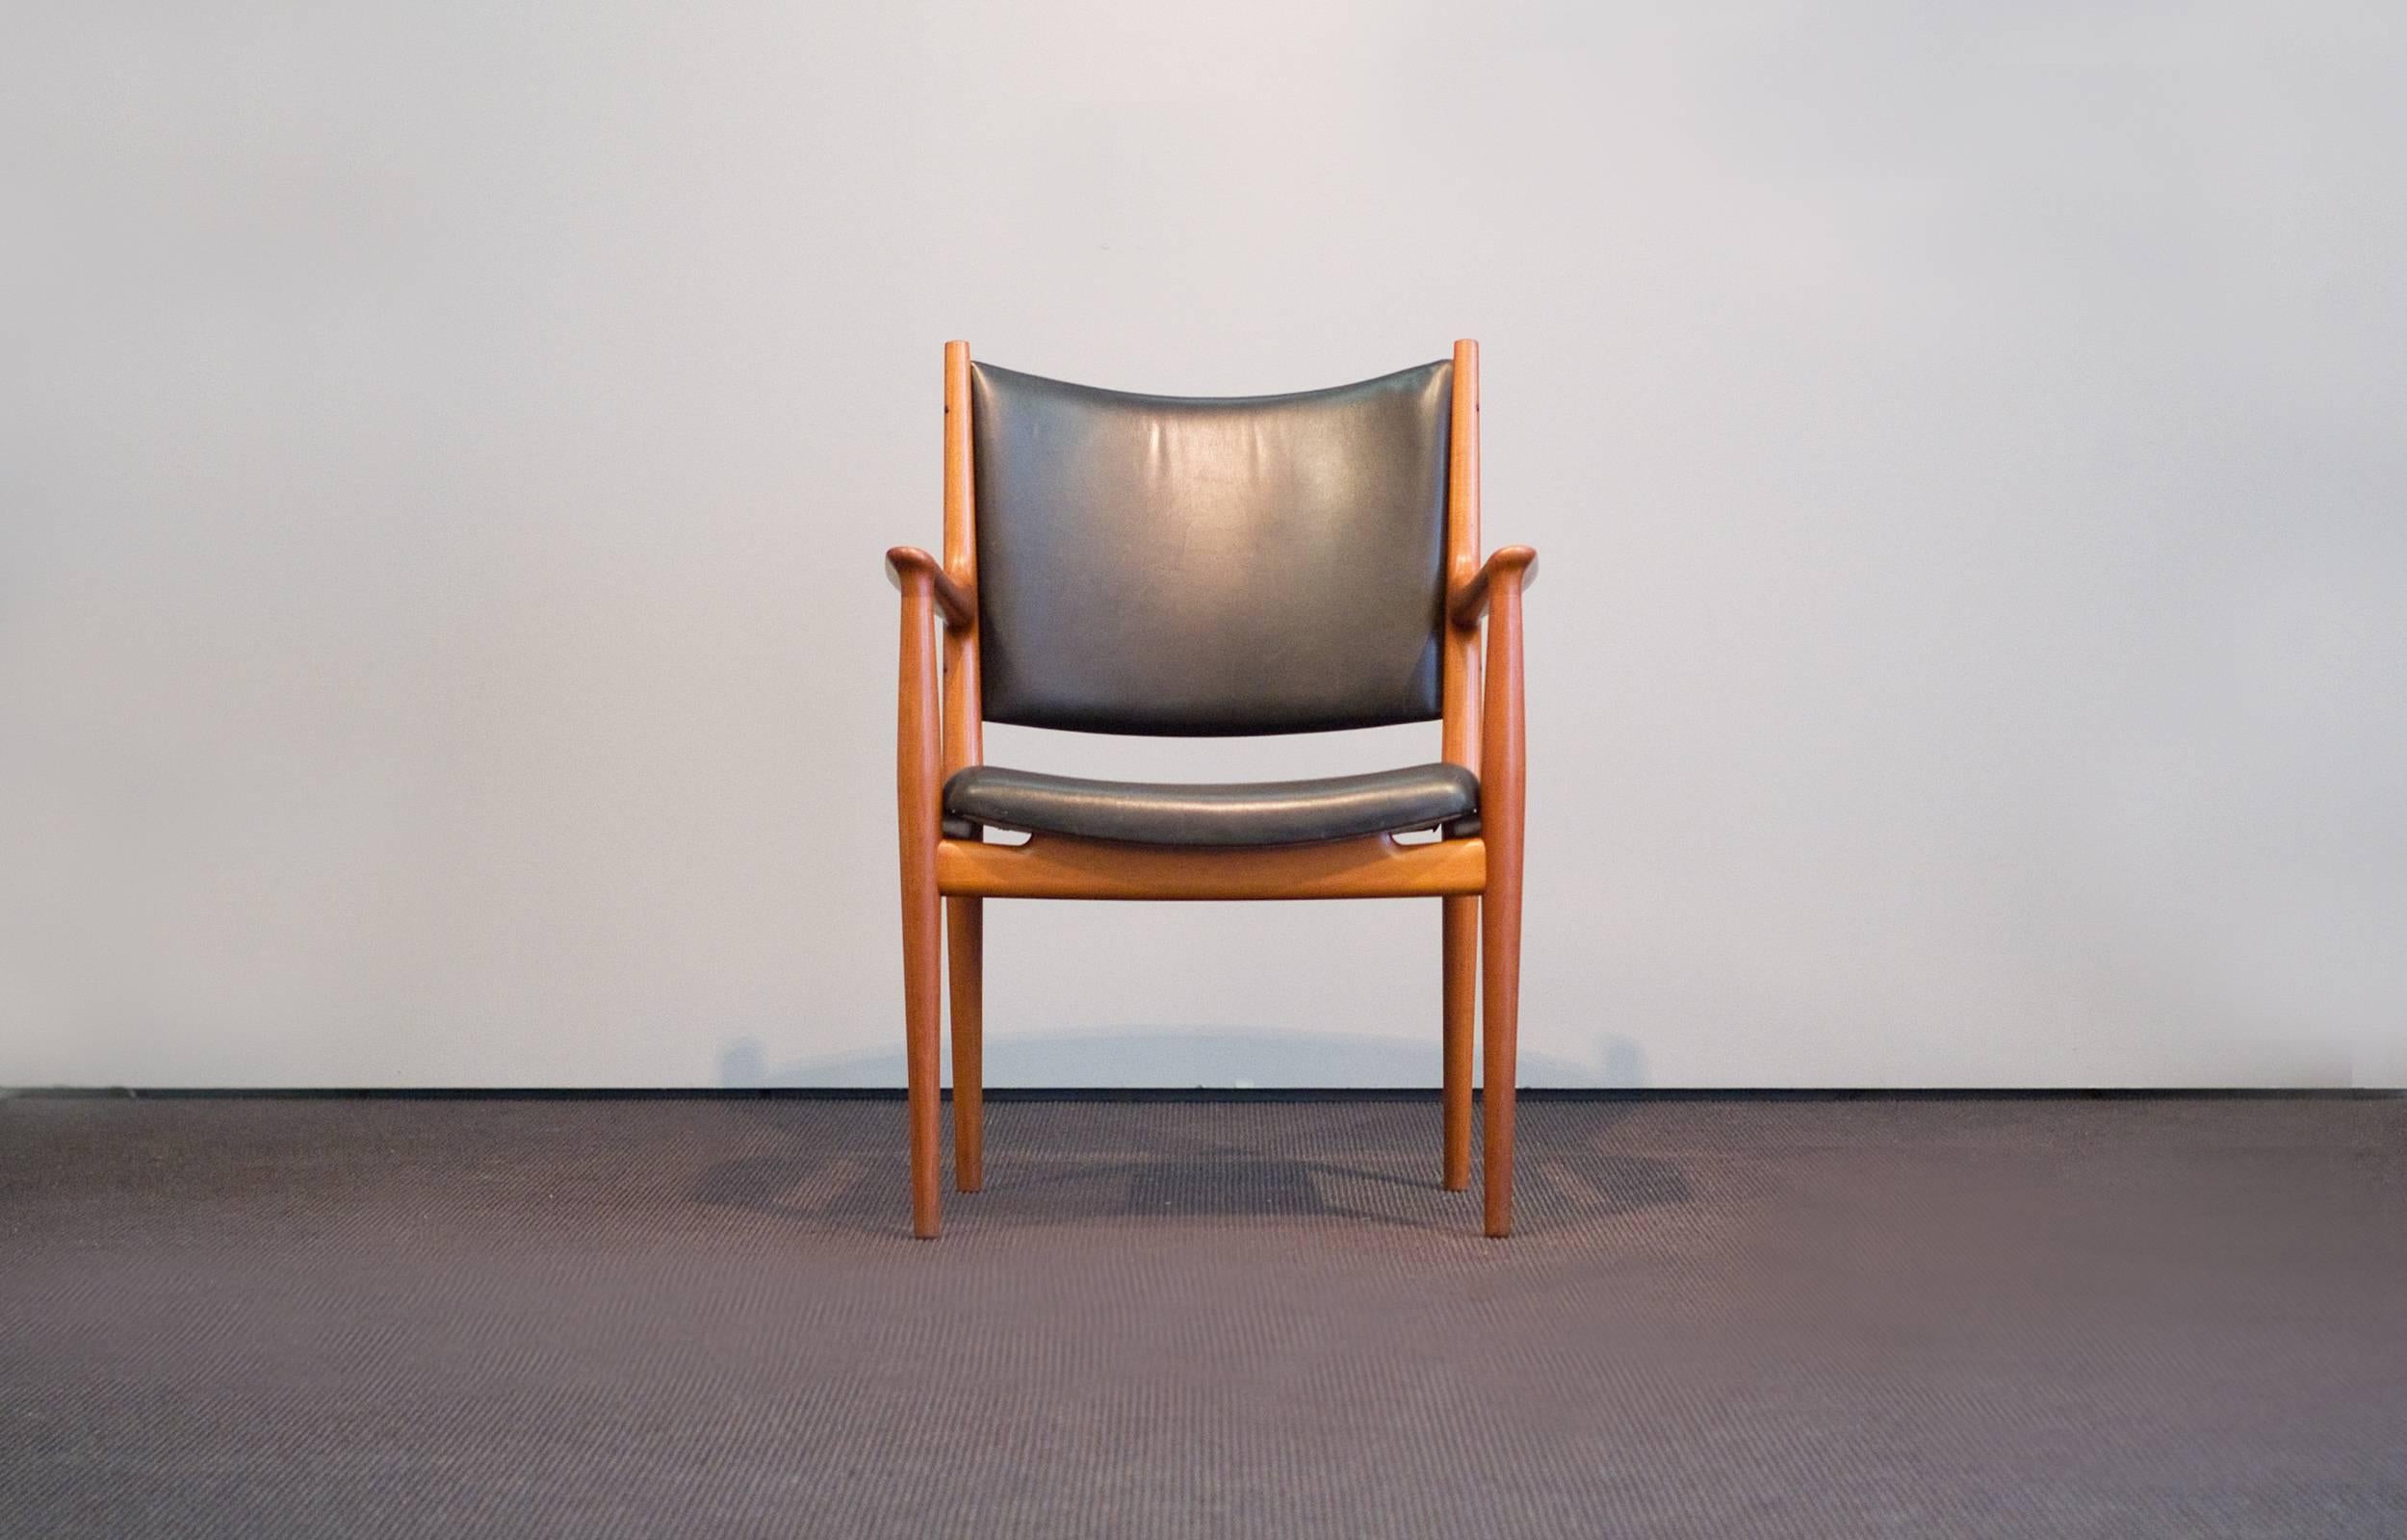 Merveilleux ensemble de huit chaises Hans J. Wegner JH 513 réalisées par Johannes Hansen. Magnifique cadre en teck grainé avec revêtement d'origine en cuir noir.

Usure normale / minimale correspondant à l'âge et à l'utilisation.

Nous avons un